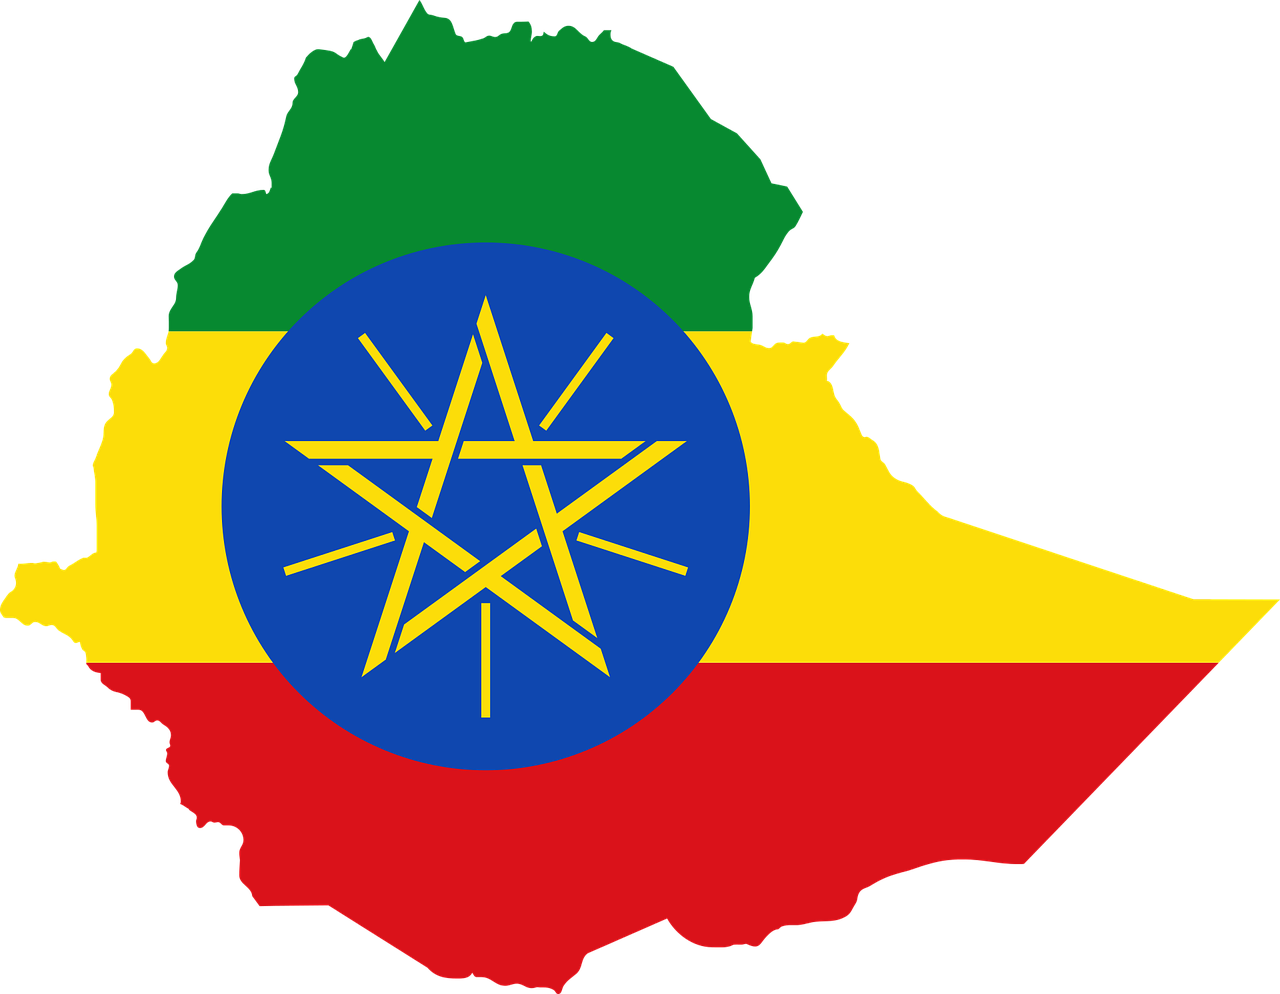 싱글오리진 에티오피아 커피 생산국의 국기와 국토 모양